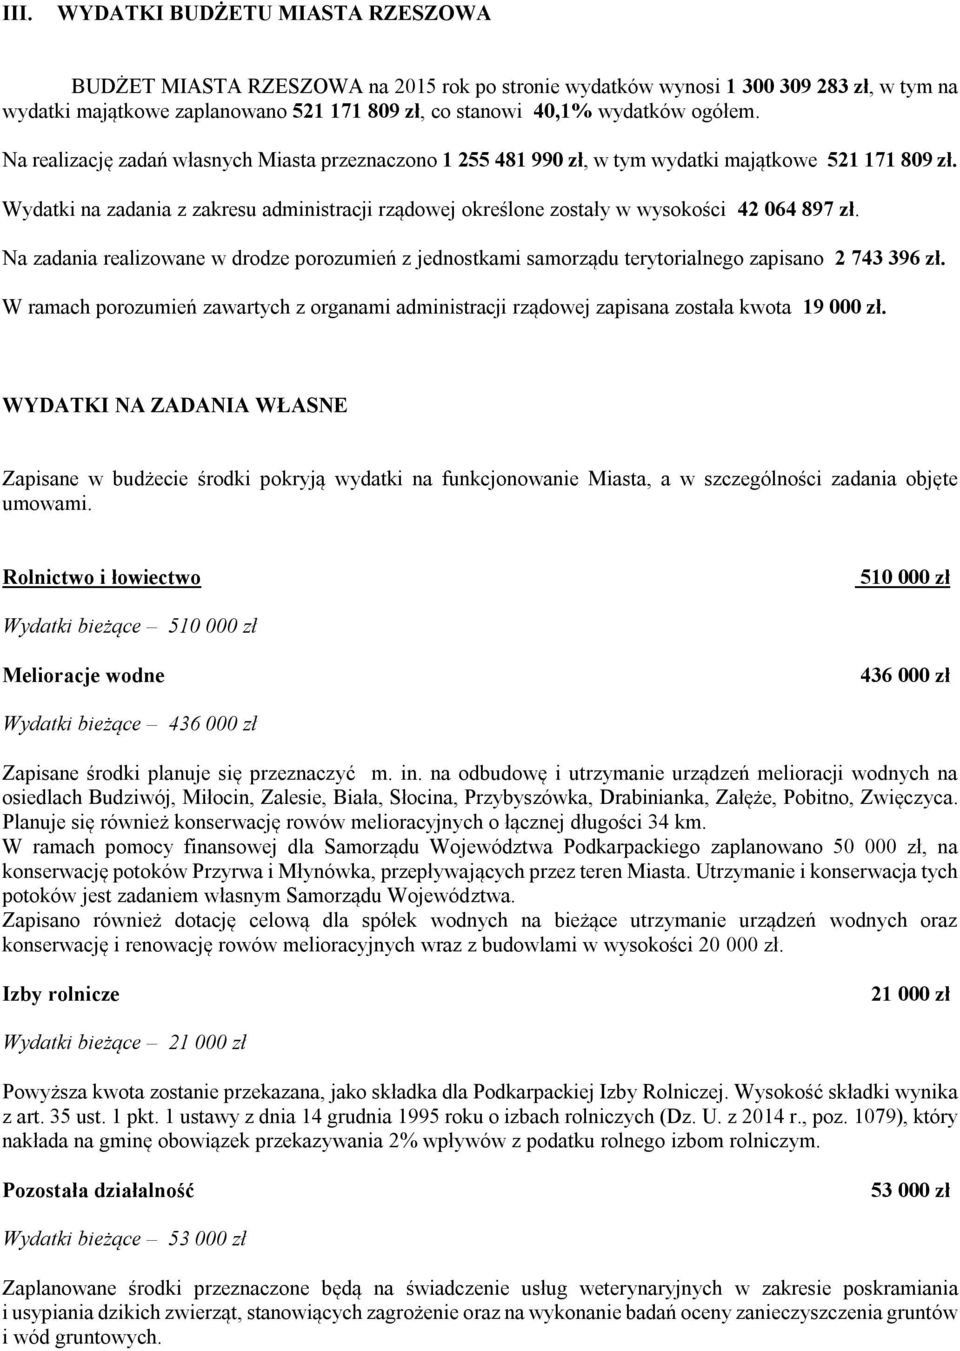 Wydatki na zadania z zakresu administracji rządowej określone zostały w wysokości 42 064 897 zł.